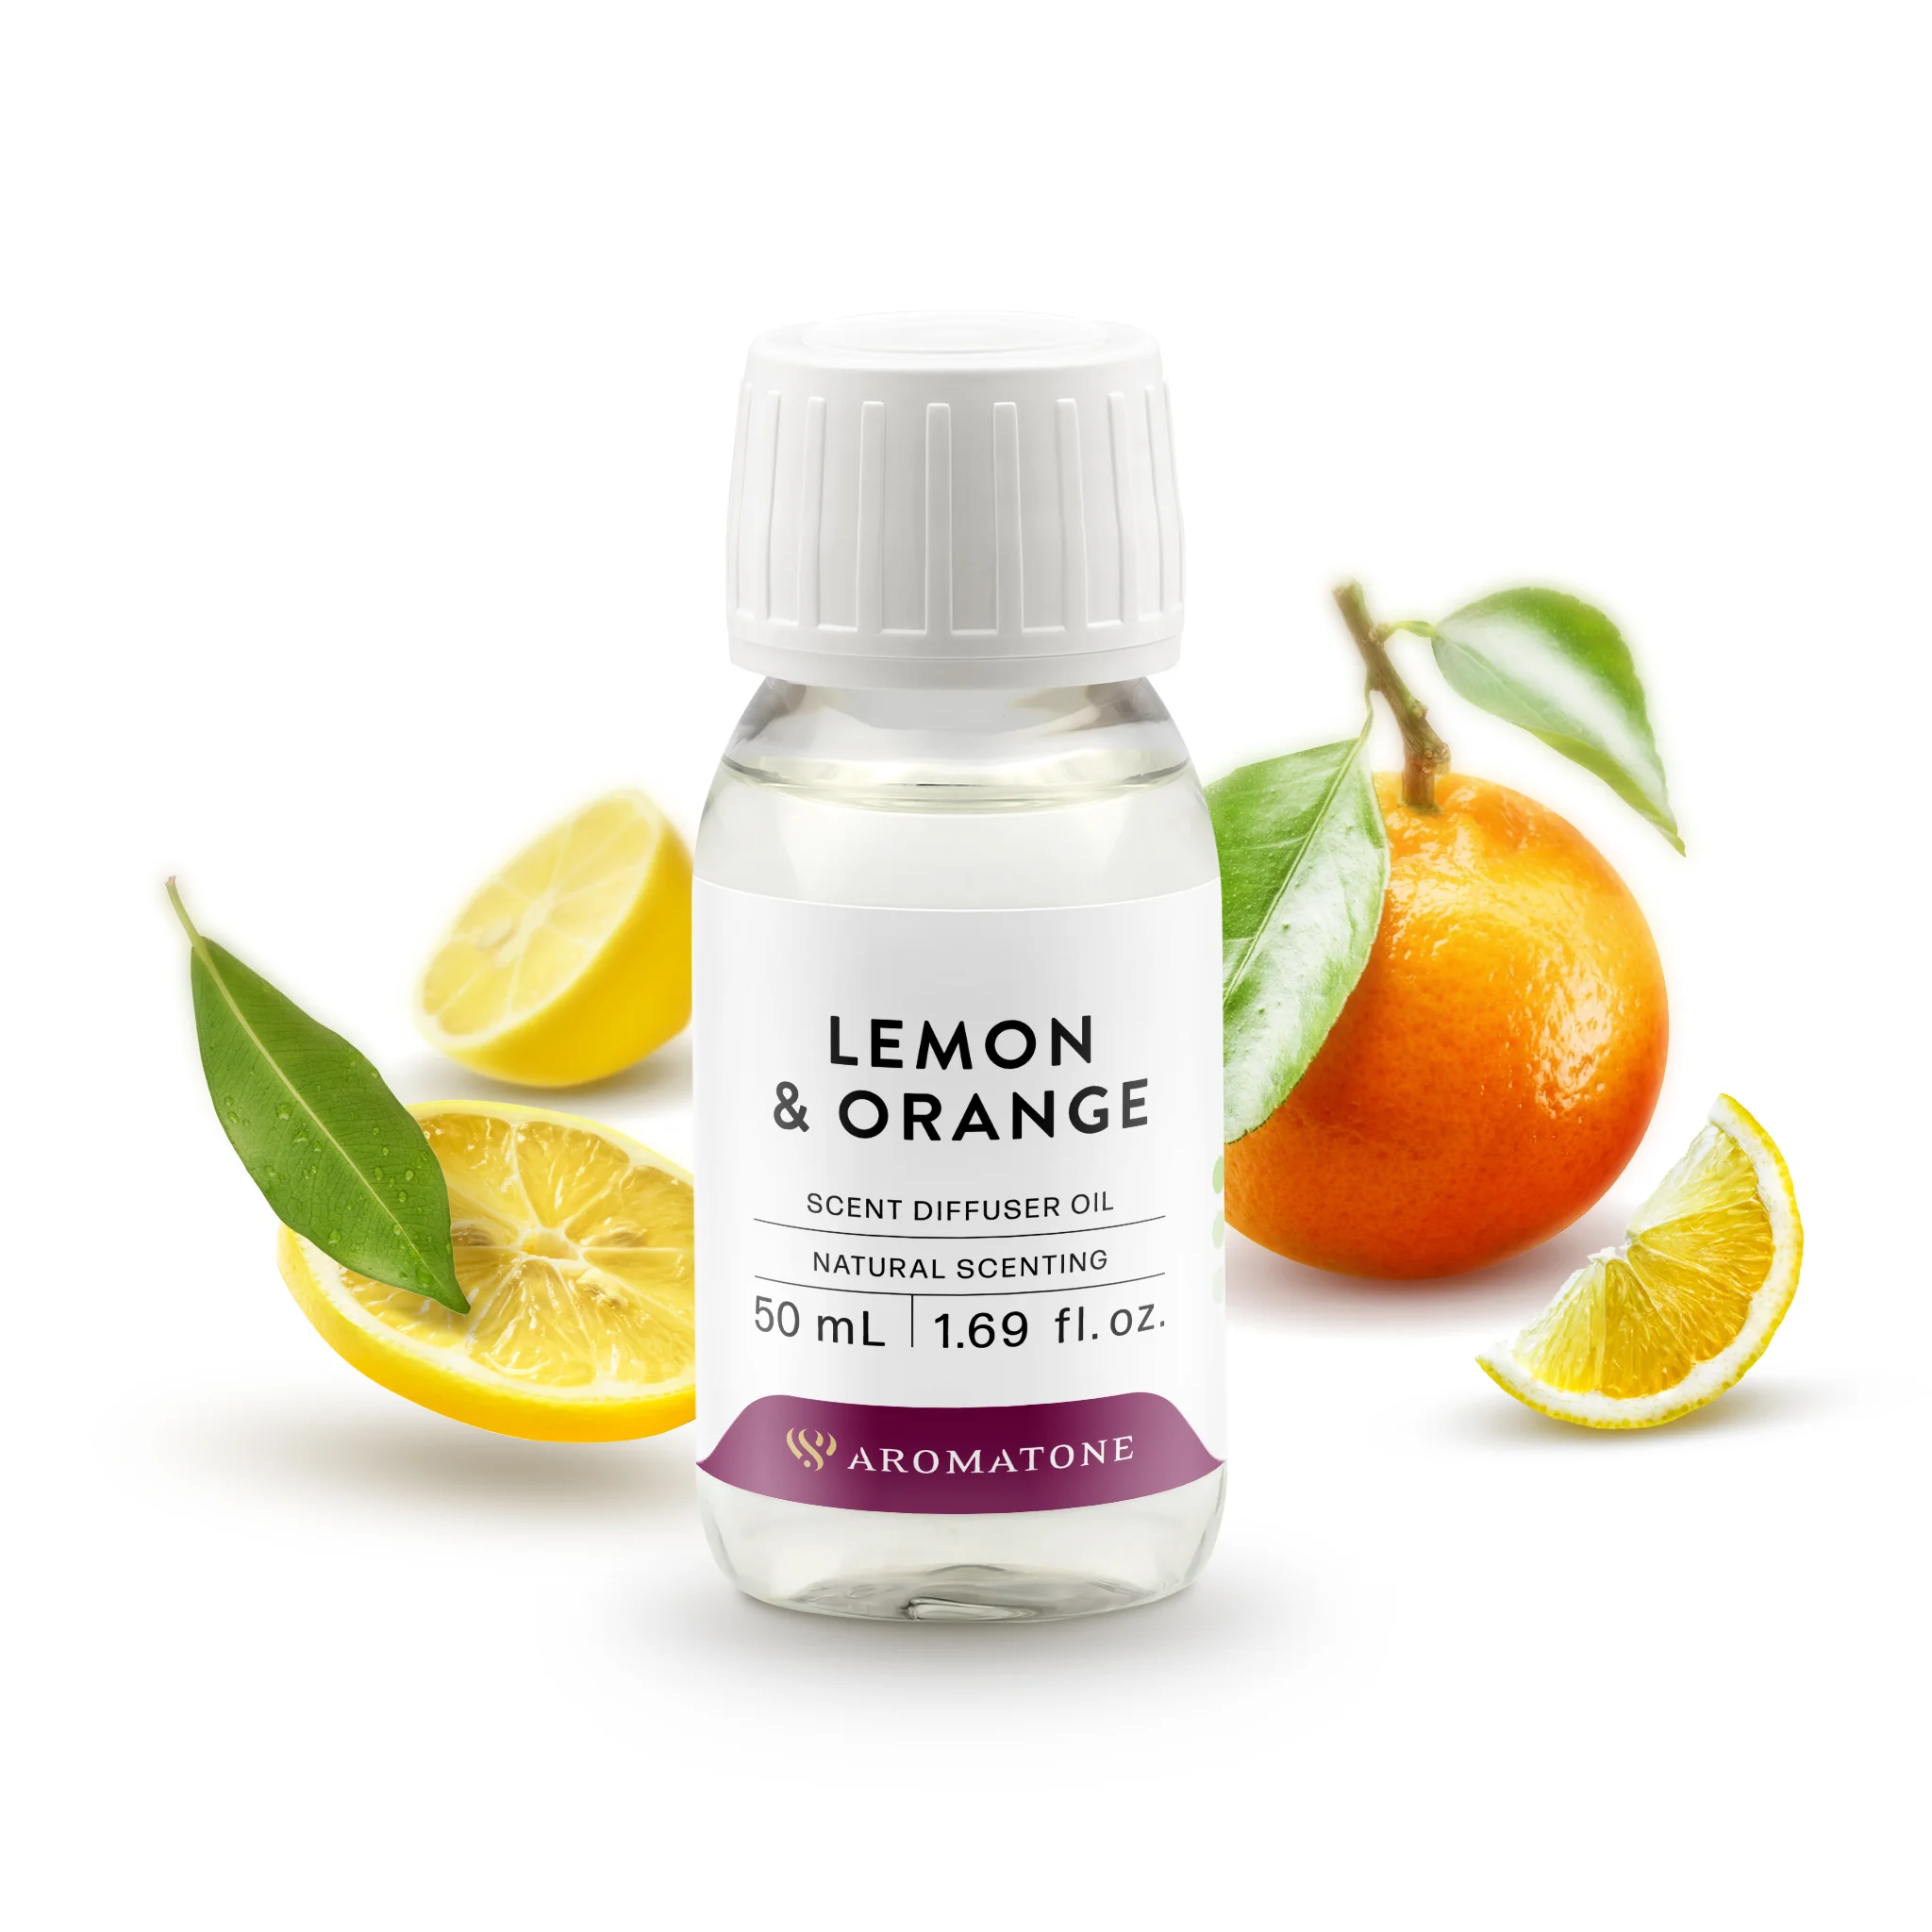 Lemon & Orange essential oil